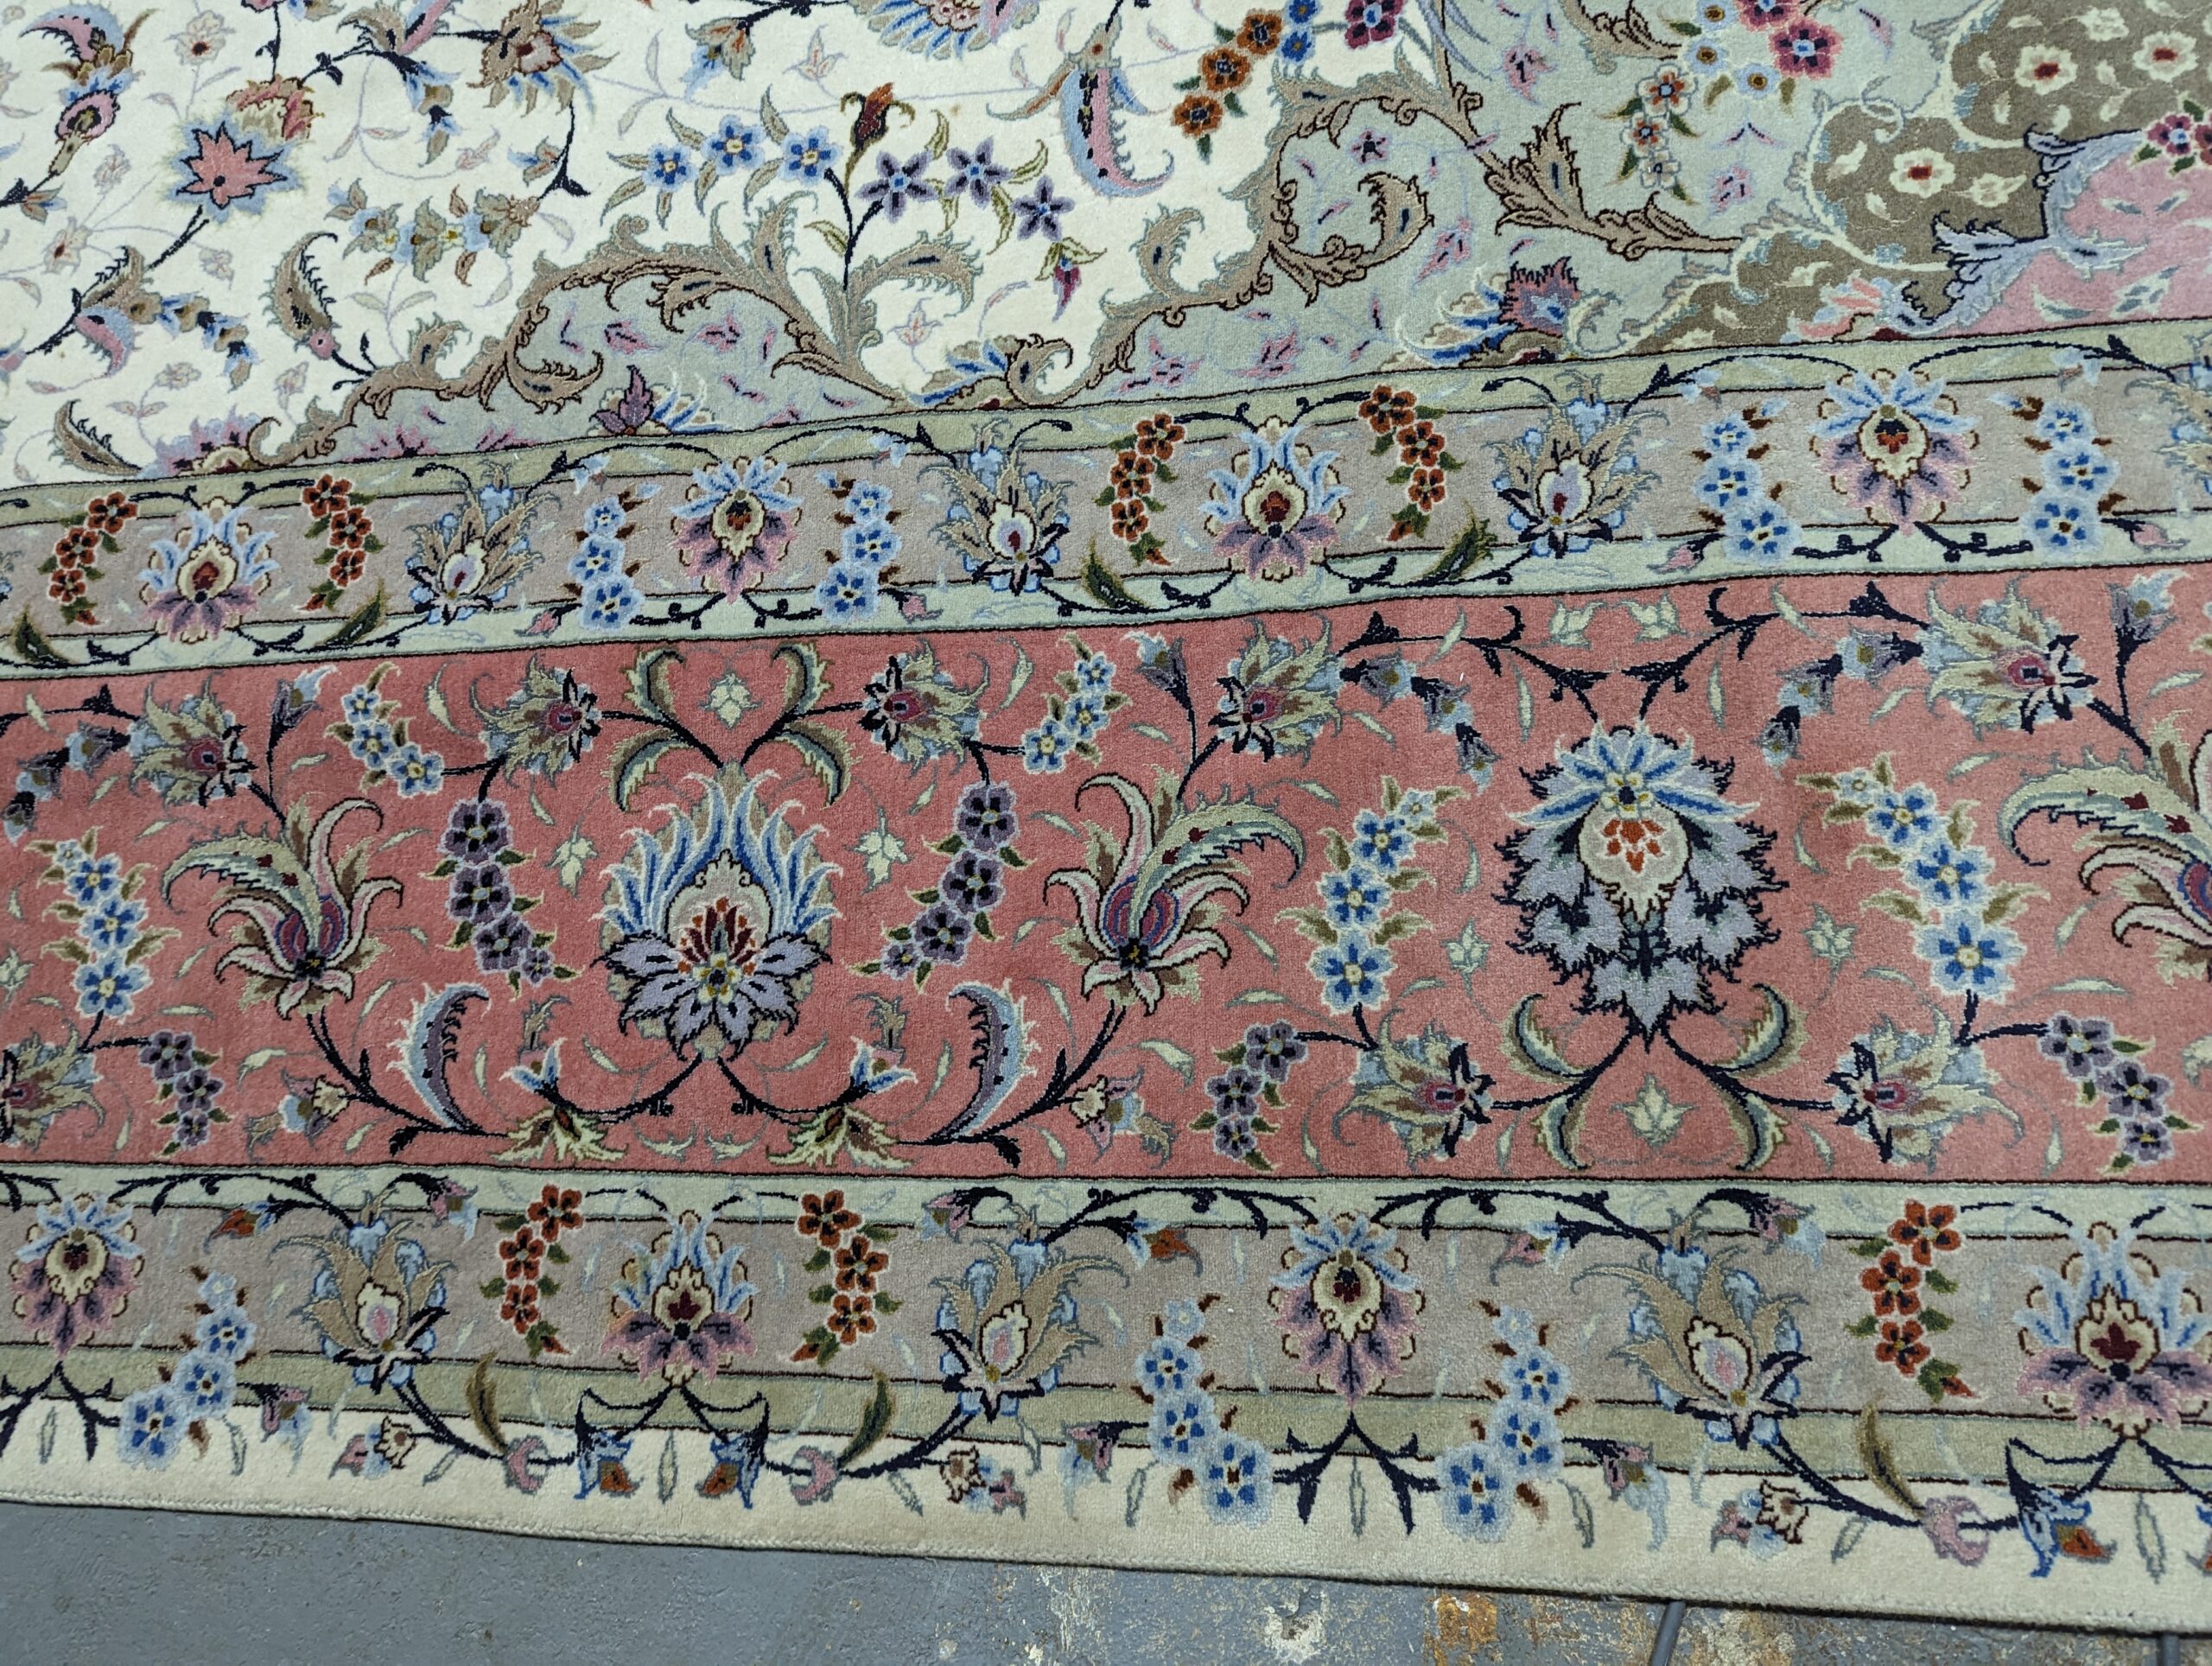 11'5" x 16'7" Tabriz Persian Rug